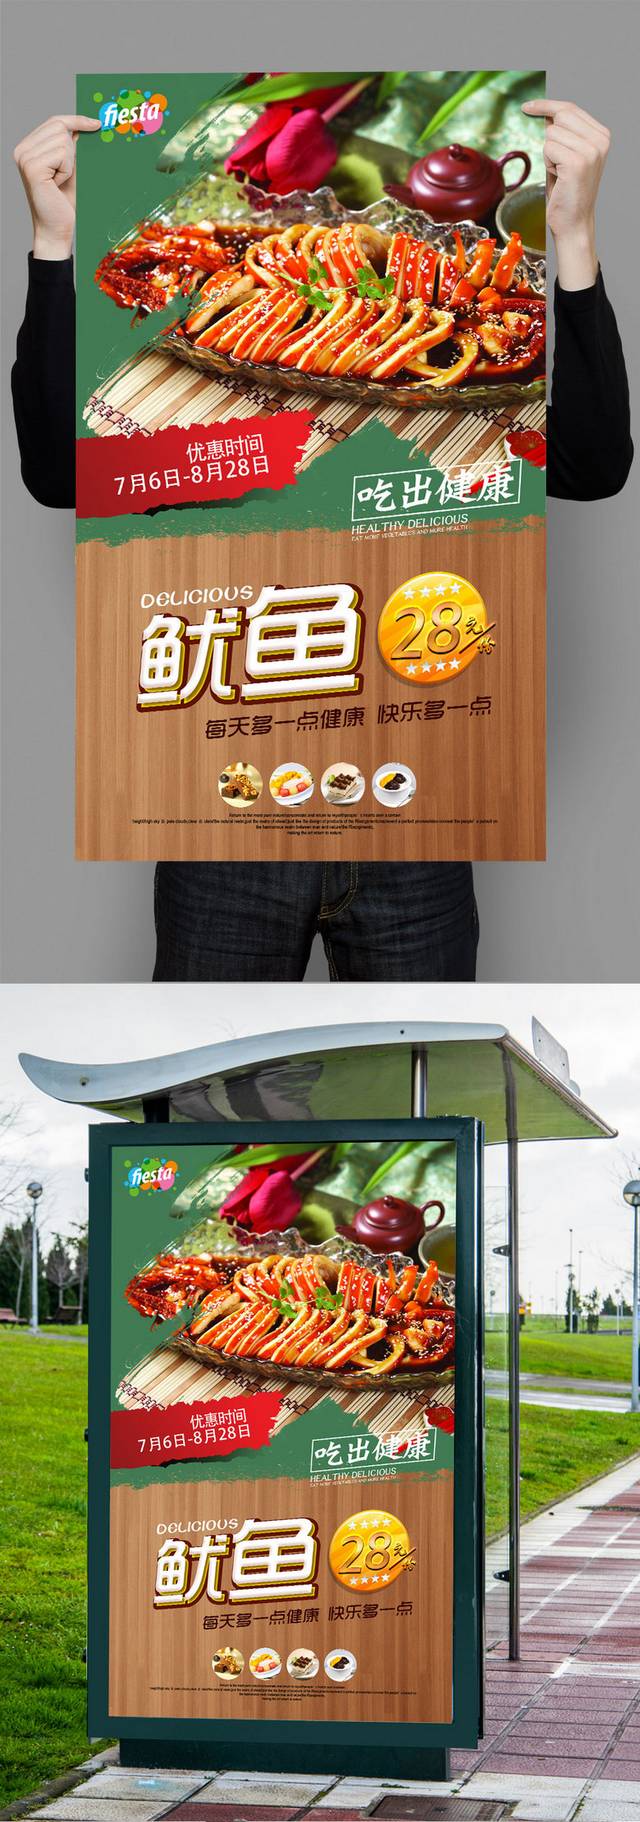 高清鱿鱼餐饮宣传海报设计